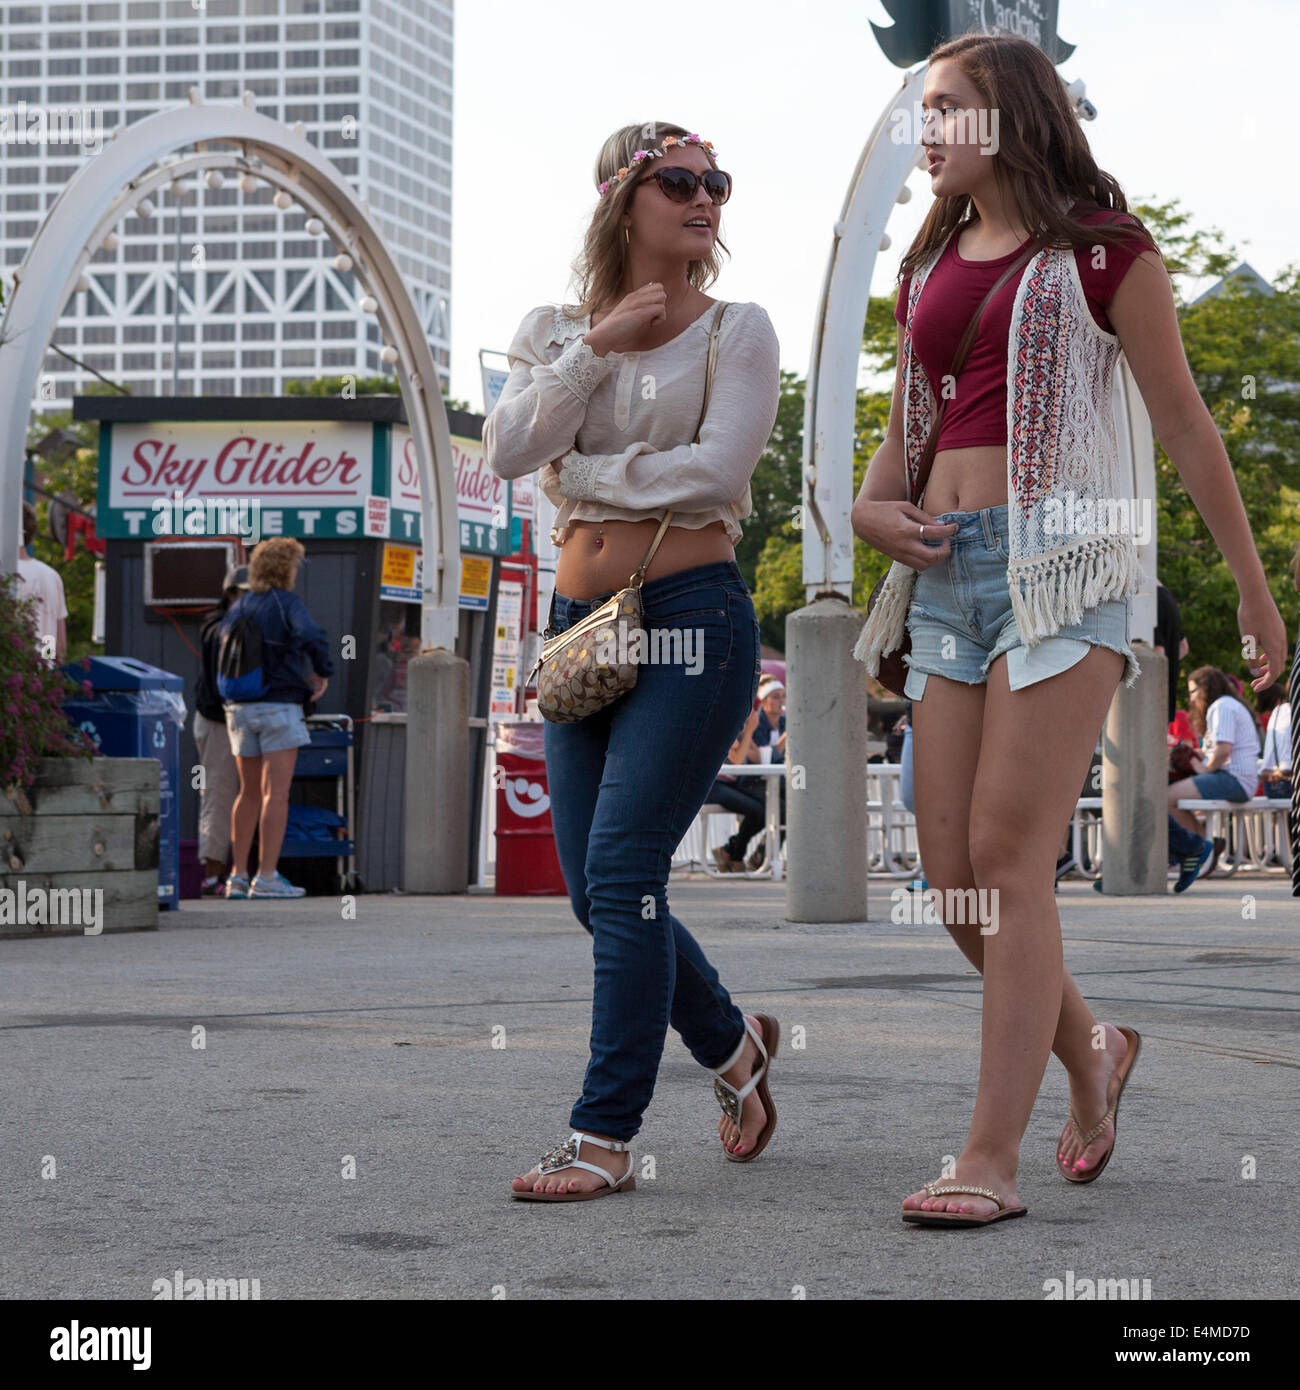 People at Summerfest in Milwaukee, Wisconsin, USA. Stock Photo